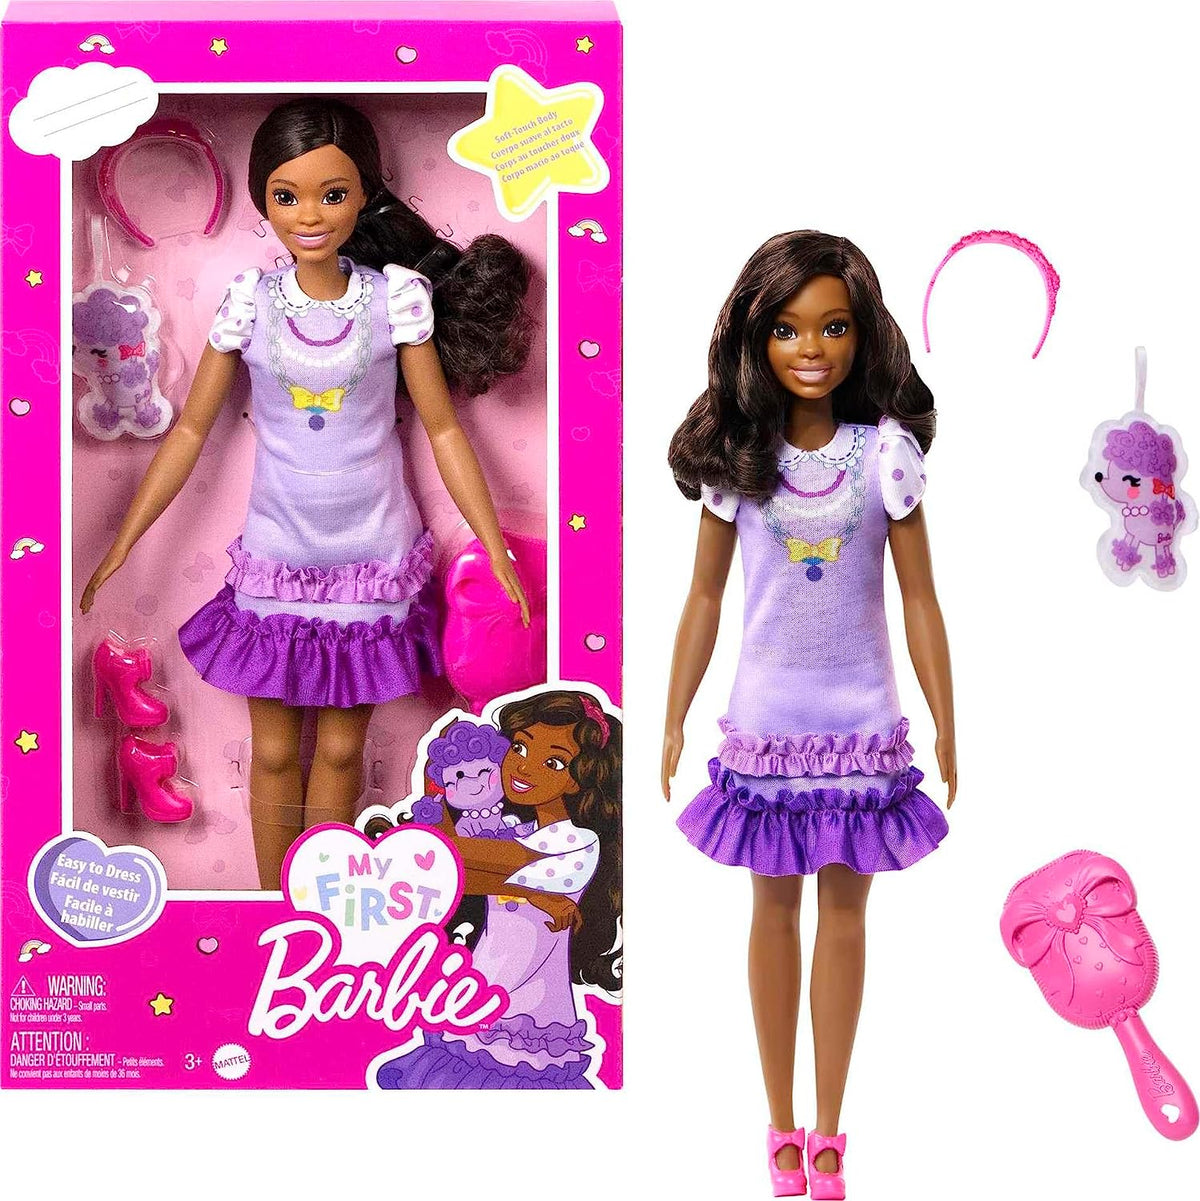 My First Barbie - Brooklyn